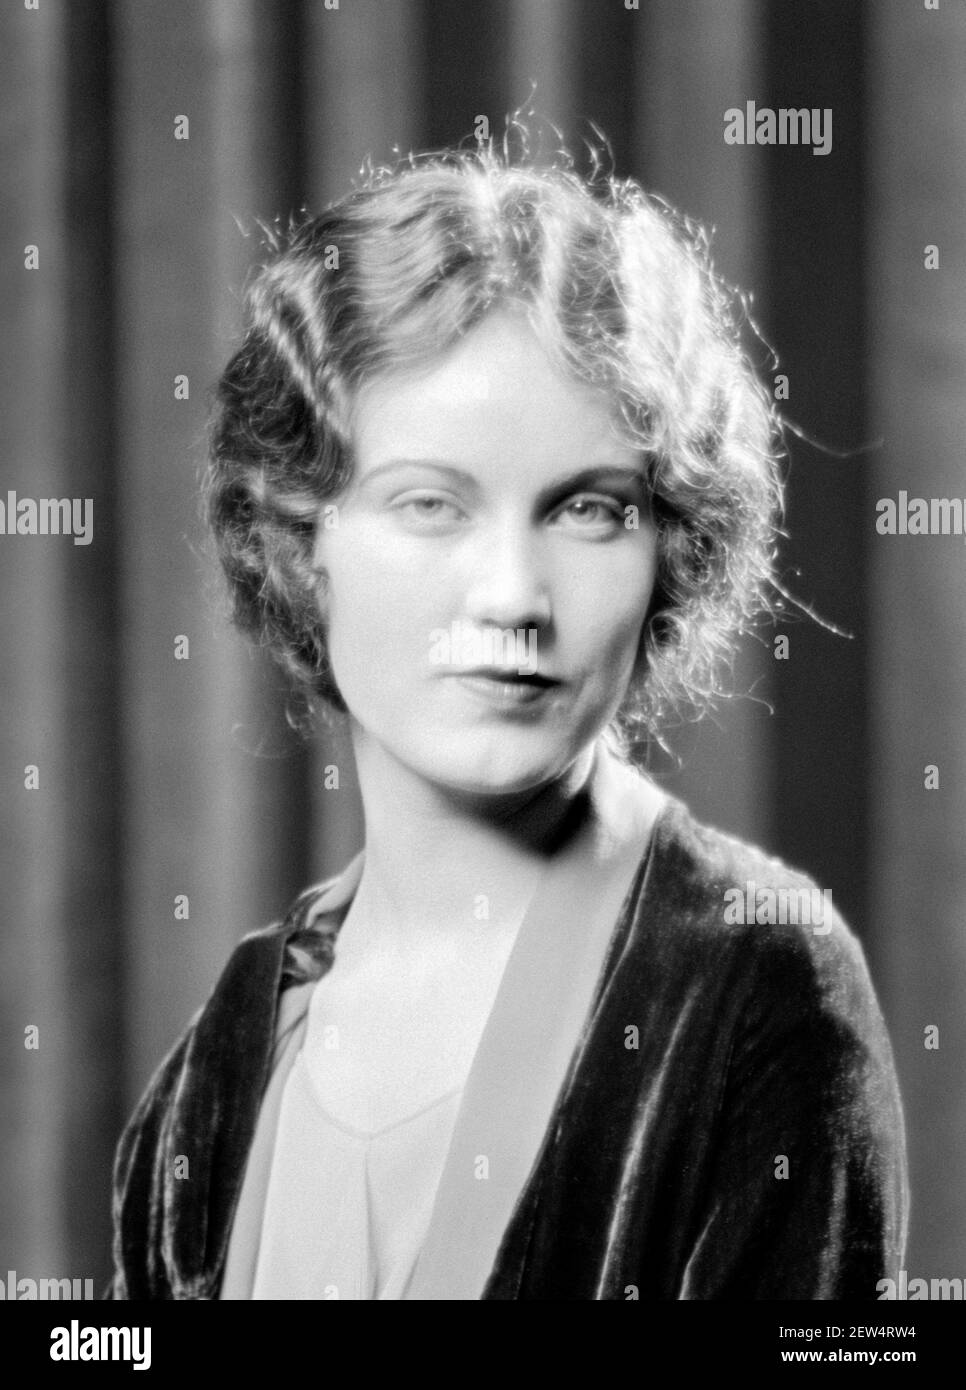 Fay Wray. Retrato de la actriz canadiense-americana, Vina Fay Wray (1907-2004), por Arnold Genthe, 1927. Wray es la más famosa por su papel en la película de 1933 'King Kong' Foto de stock